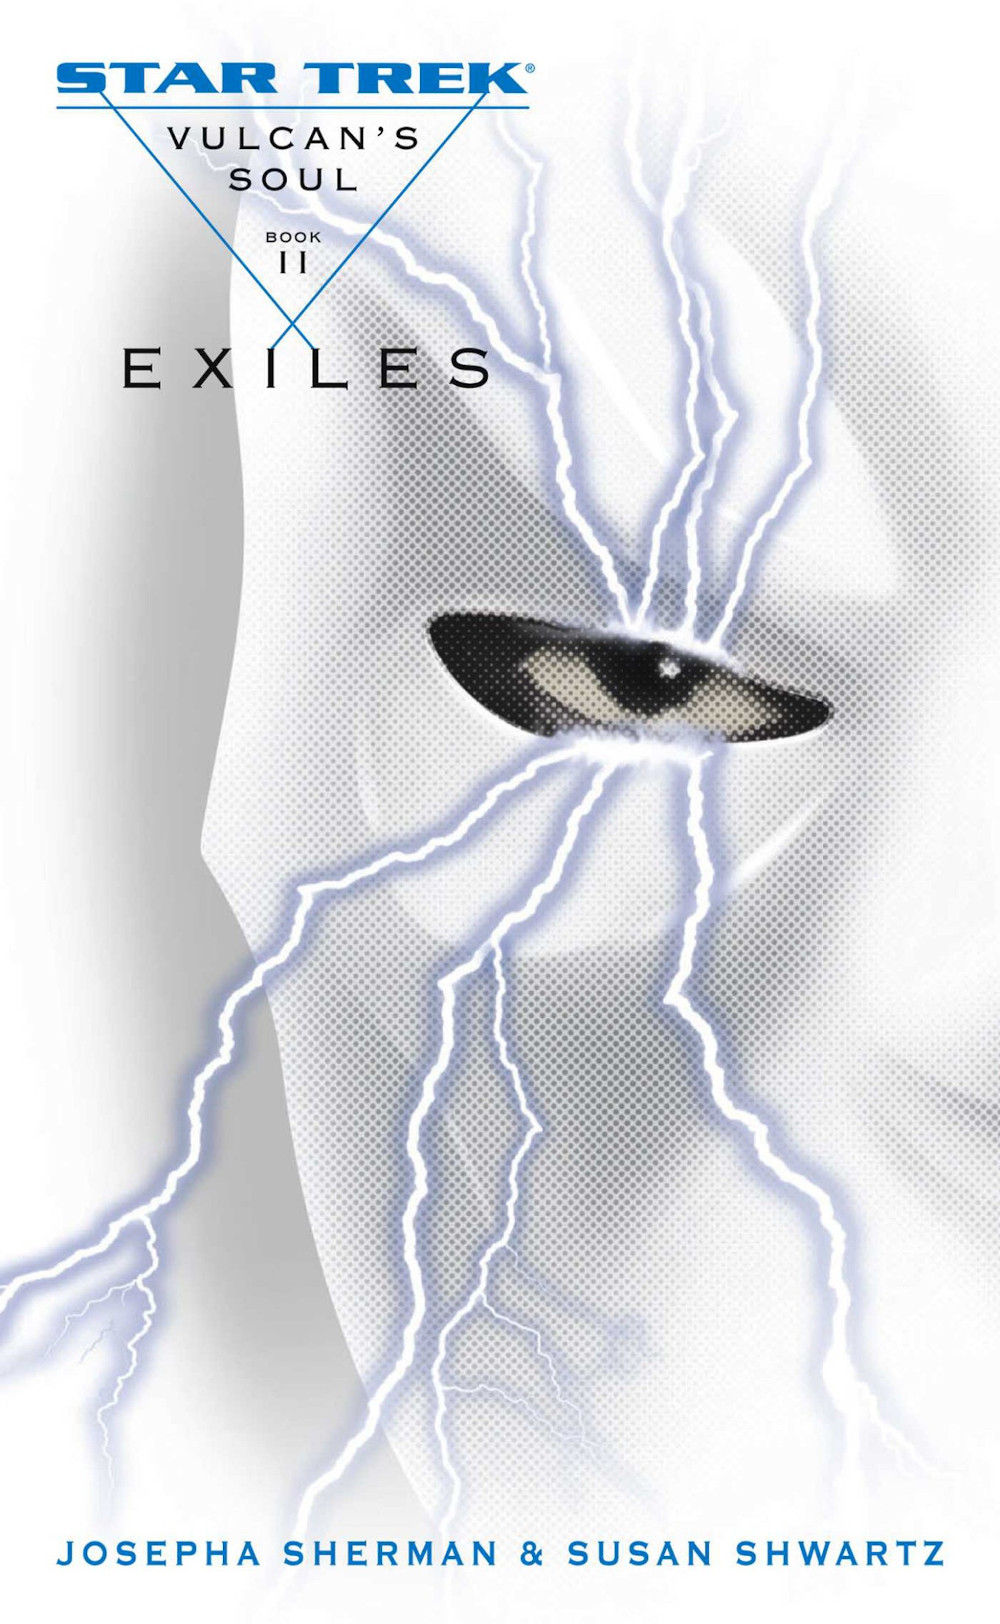 Vulcan's Soul, Book Two: Exiles (Jun 2006)